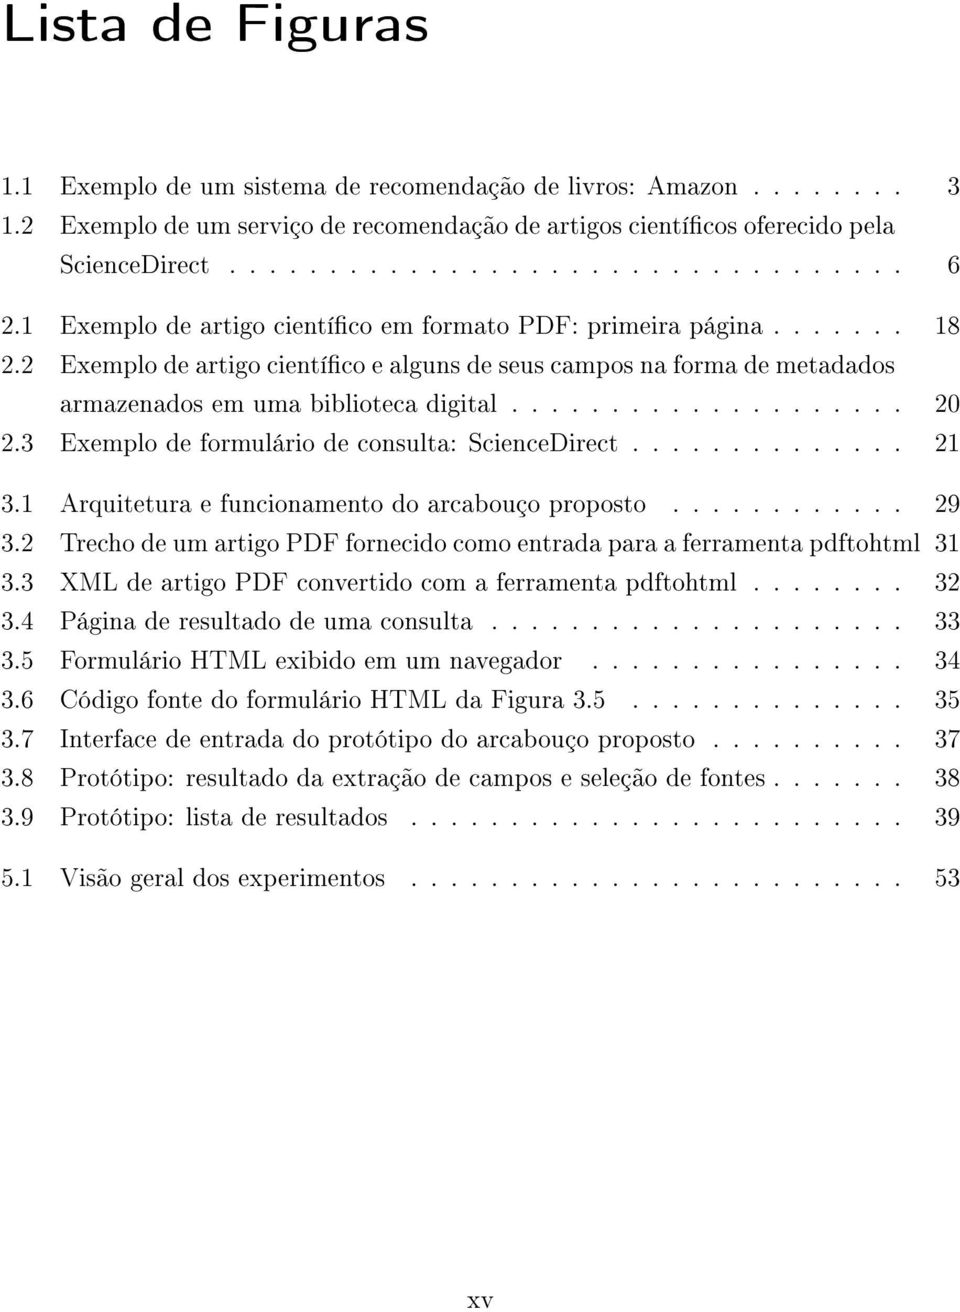 3 Exemplo de formulário de consulta: ScienceDirect.............. 21 3.1 Arquitetura e funcionamento do arcabouço proposto............ 29 3.